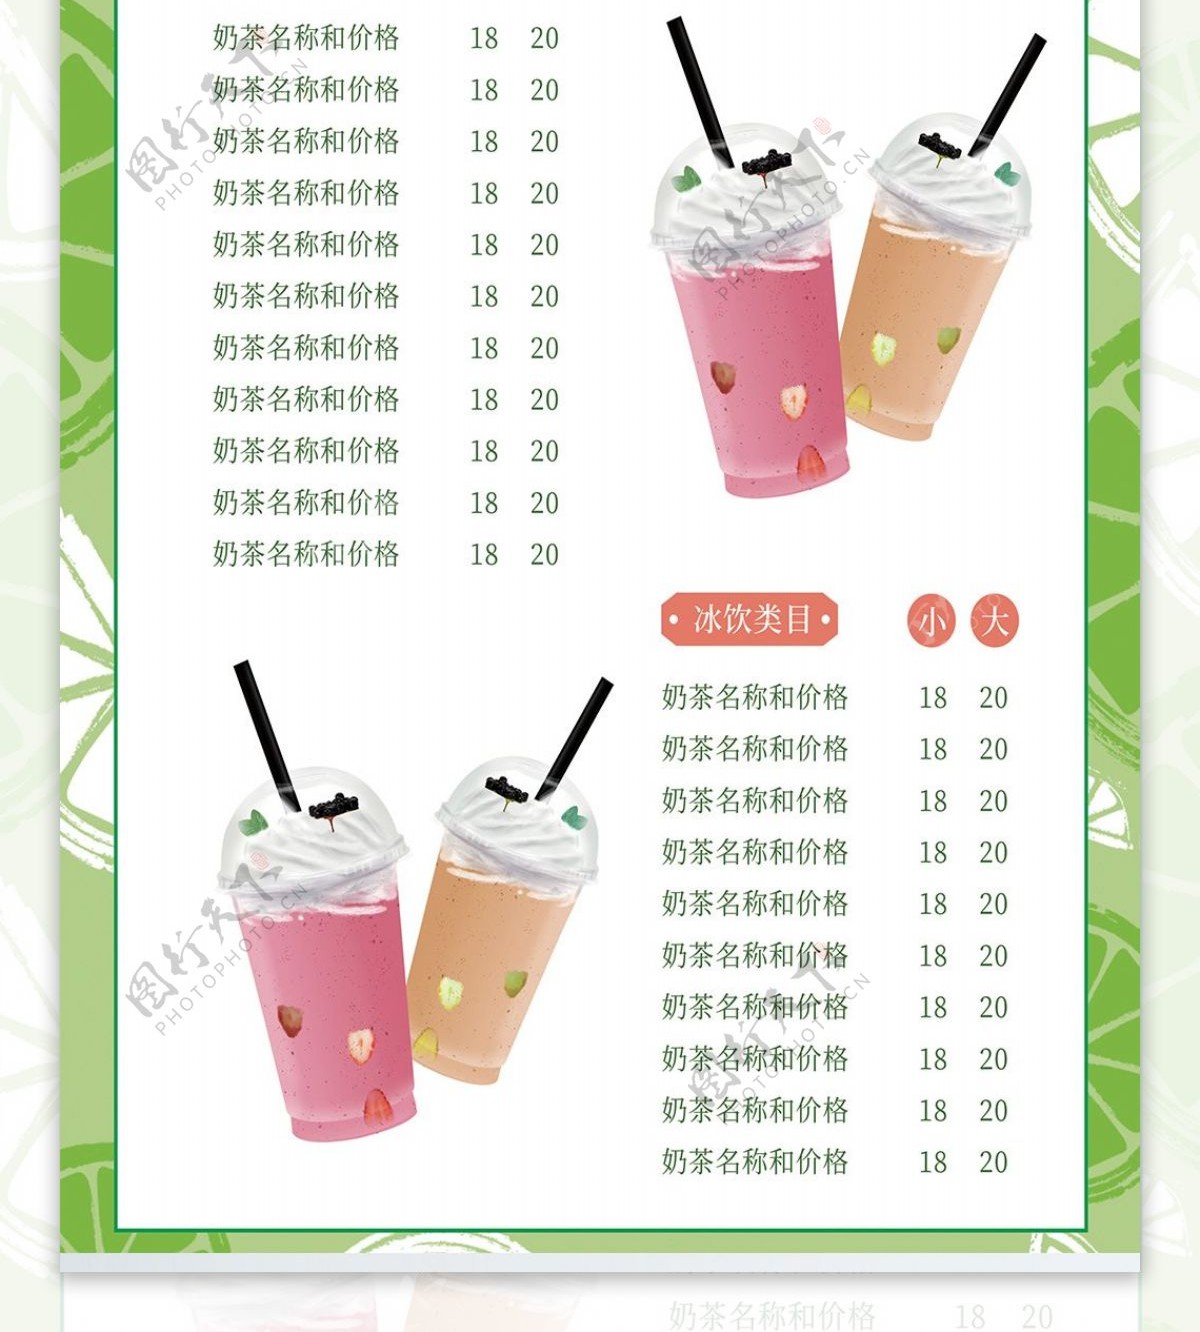 原创奶茶店菜单饮品价格表咖啡饮料单子